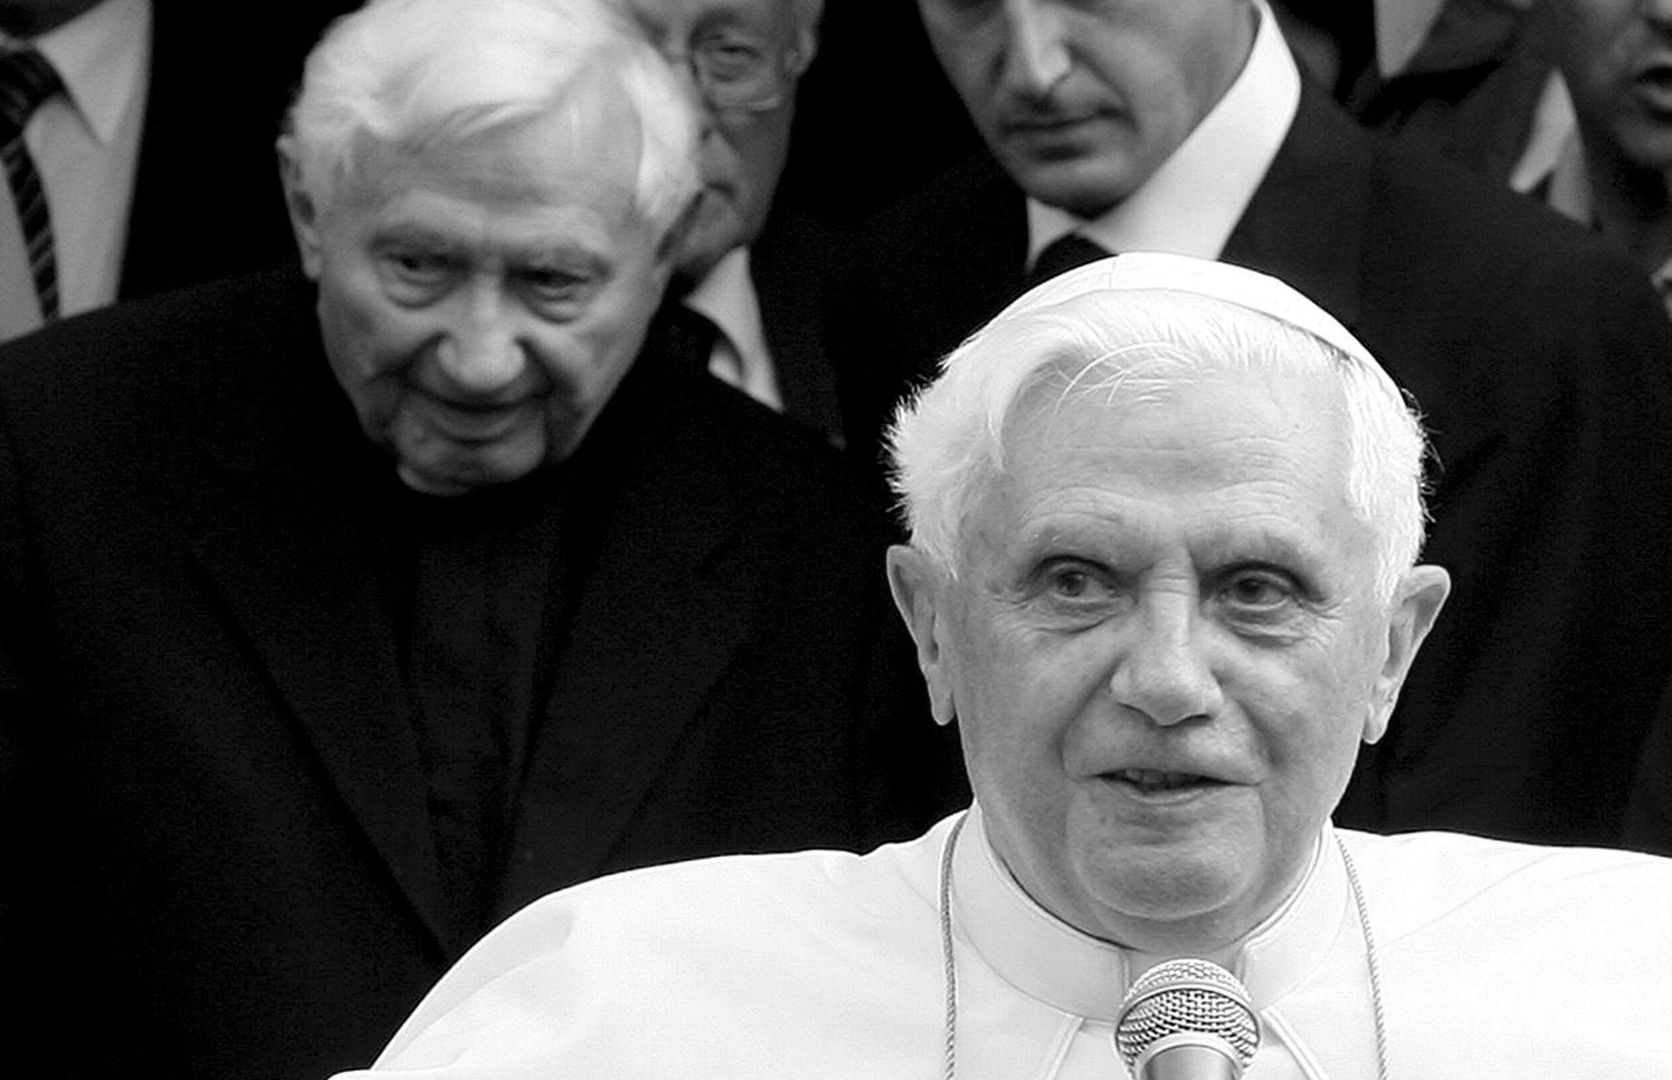 Nie żyje brat Benedykta XVI. Georg Ratzinger miał 96 lat